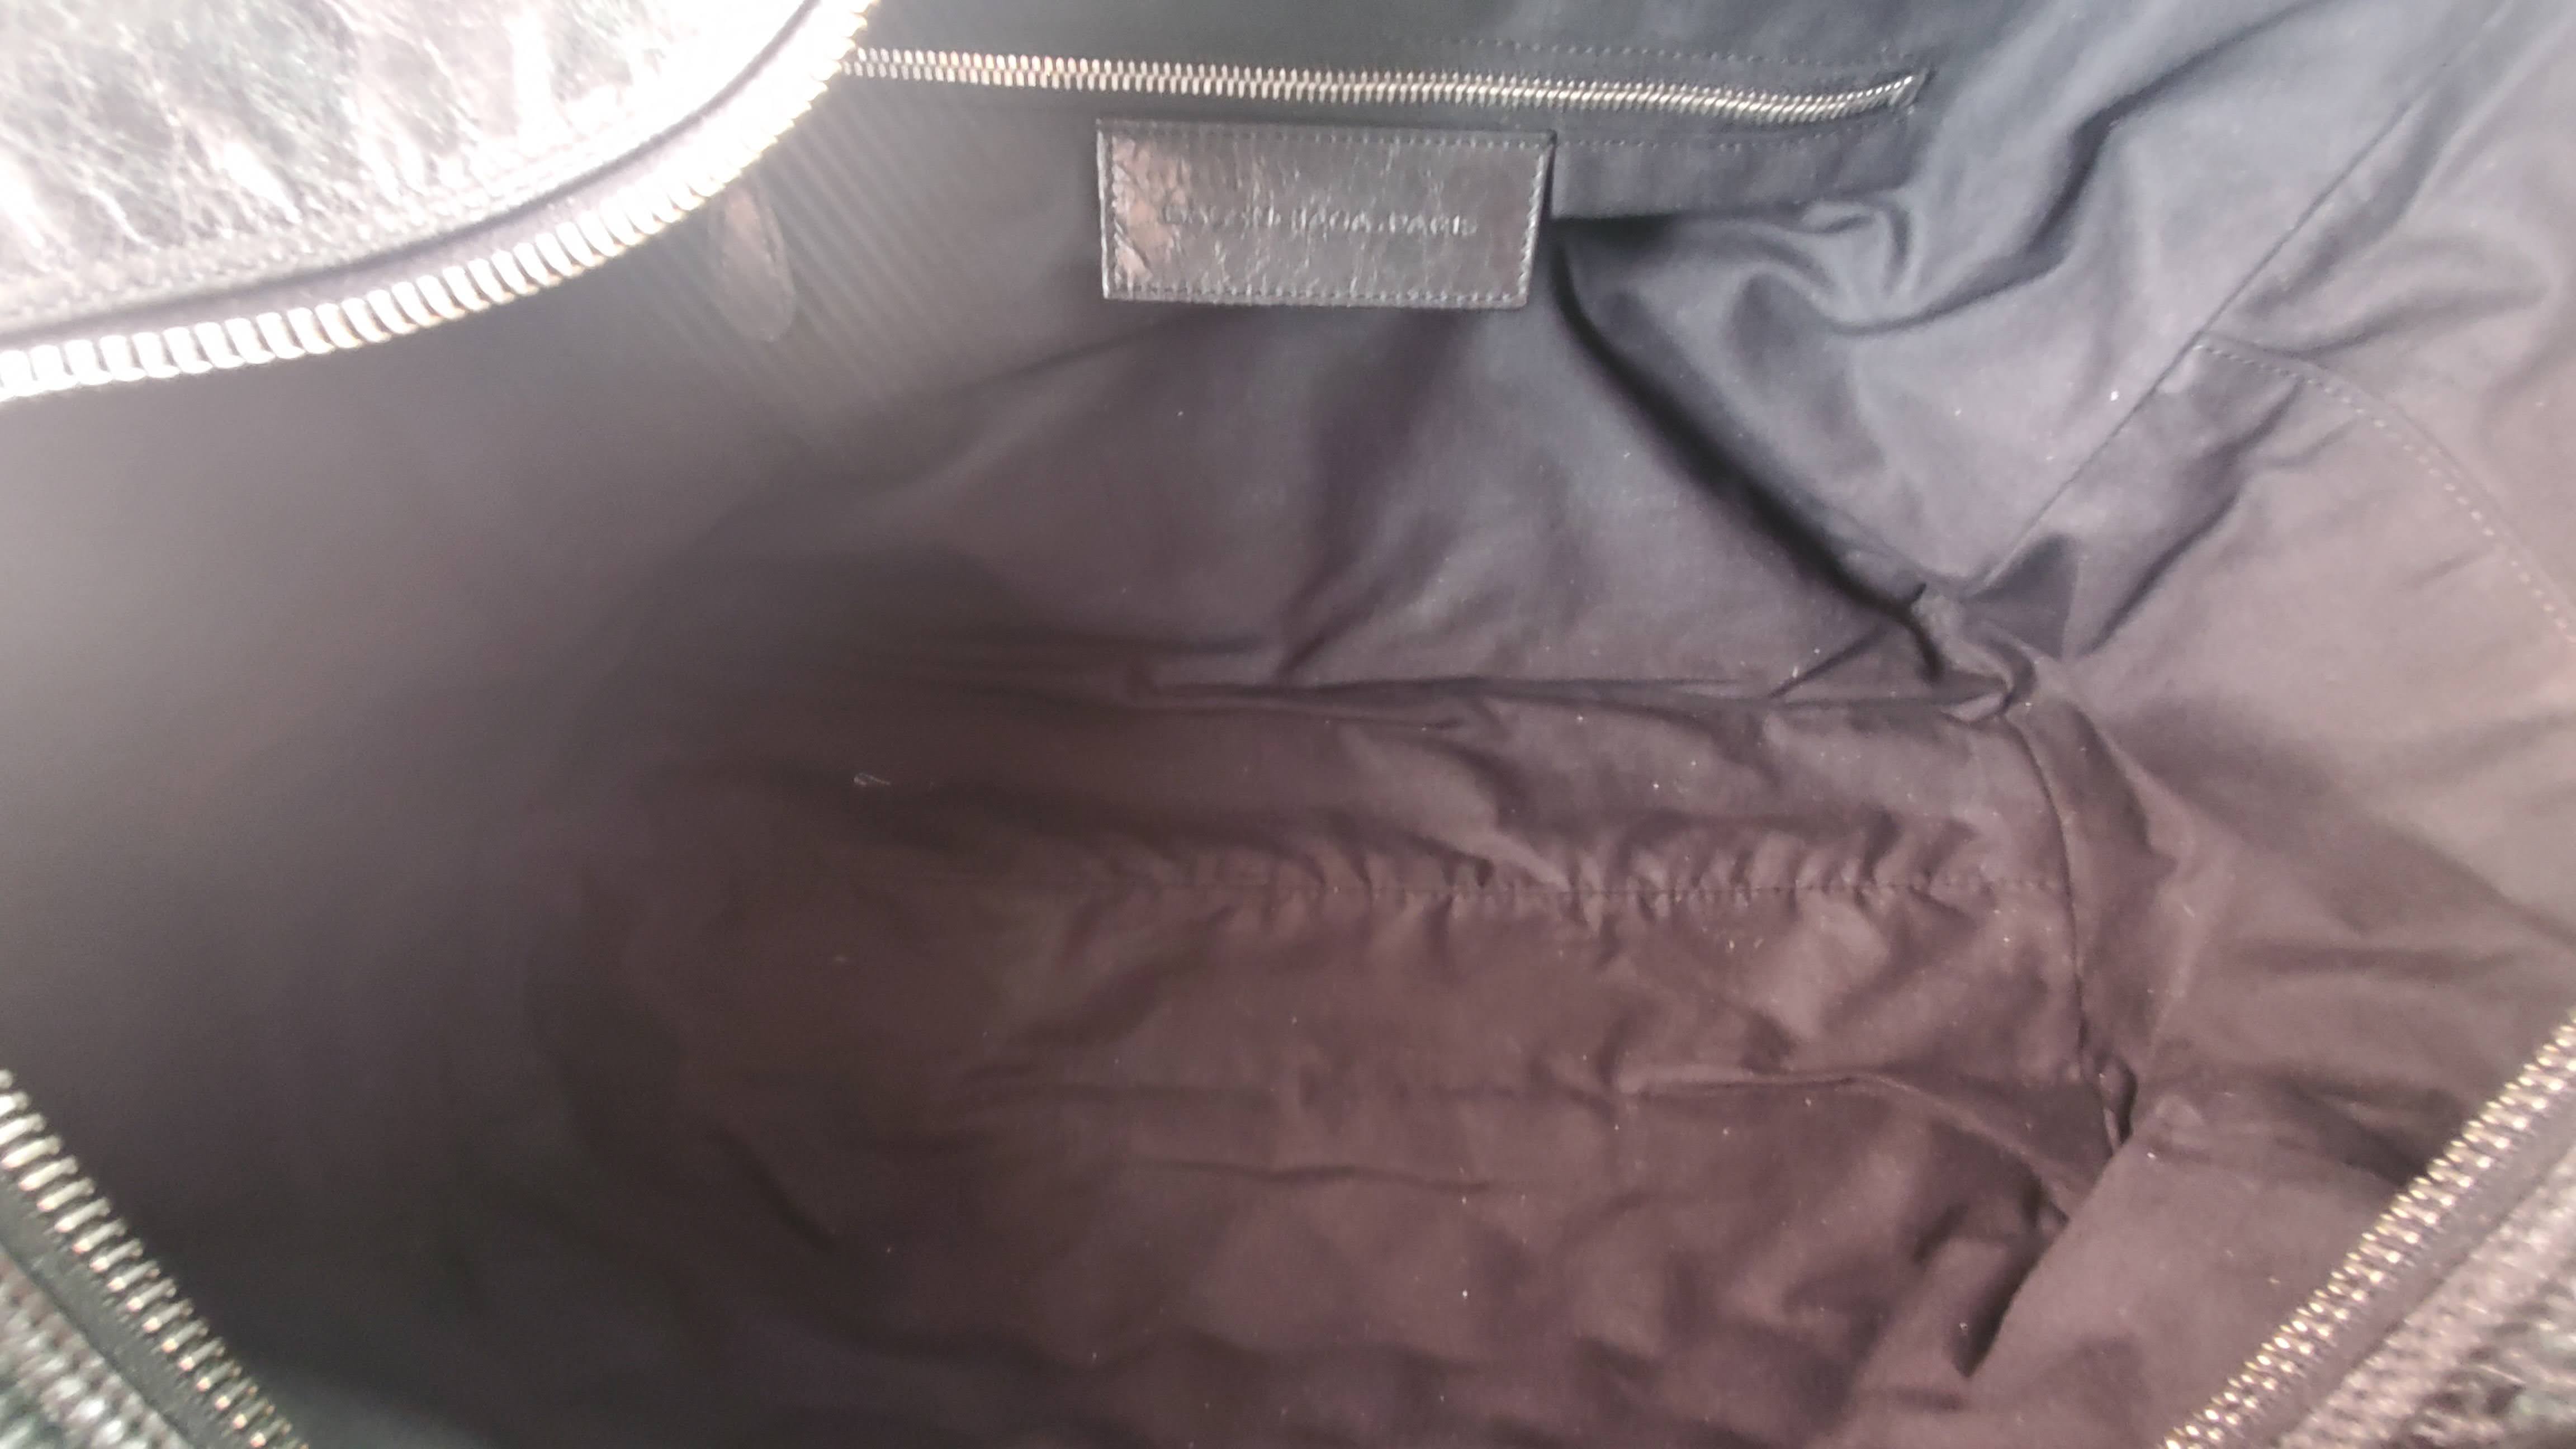 Women's Chevre Leather Matelassé GM Bag